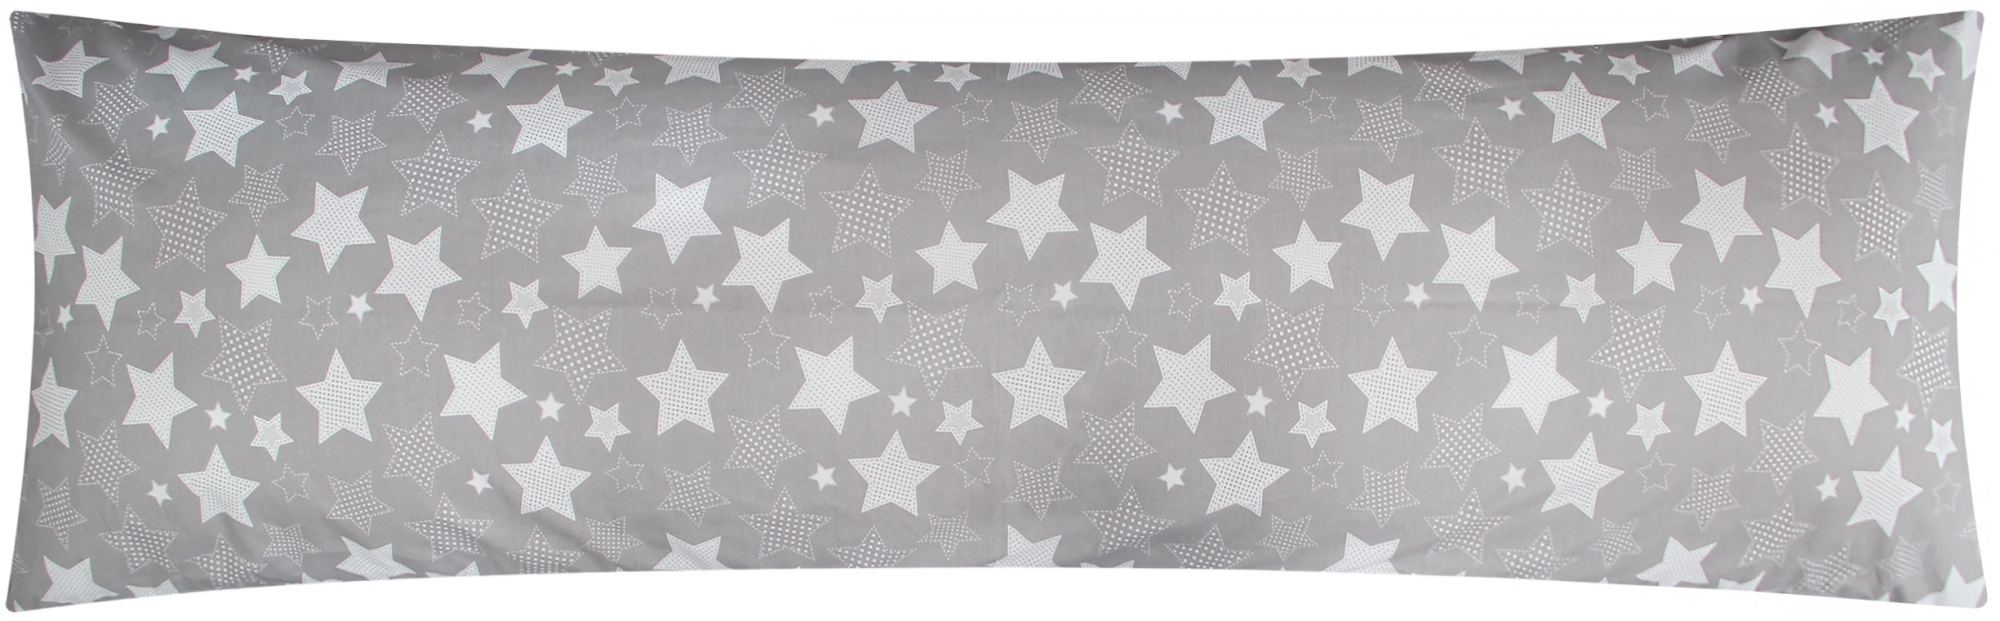 Baumwoll Renforcé Seitenschläferkissen Bezug 40x145cm - Sterne in Grau und Weiß - 100% Baumwolle Stillkissenbezug (KY-500-1)